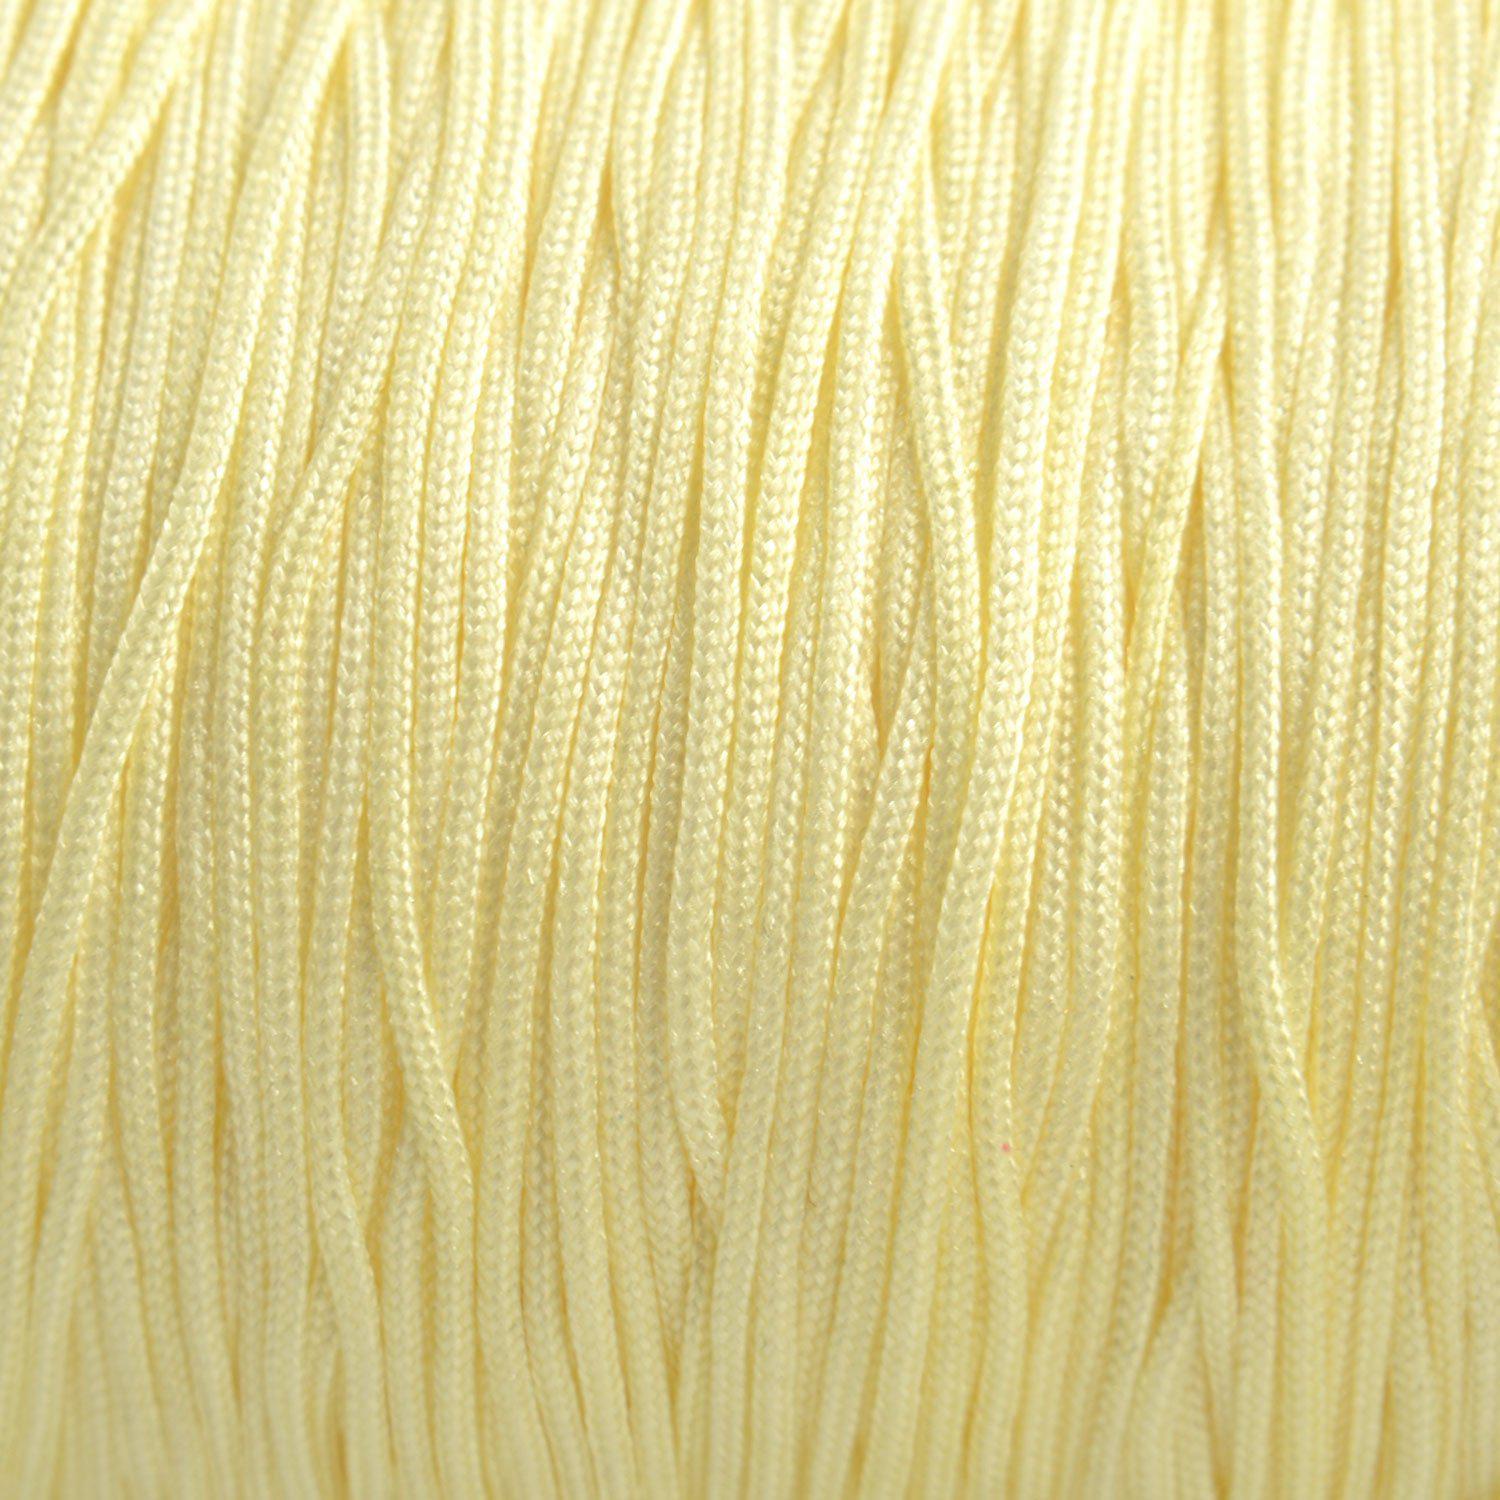 Rol nylon koord cream white 0.8mm - 120 meter-Kraaltjes van Renate